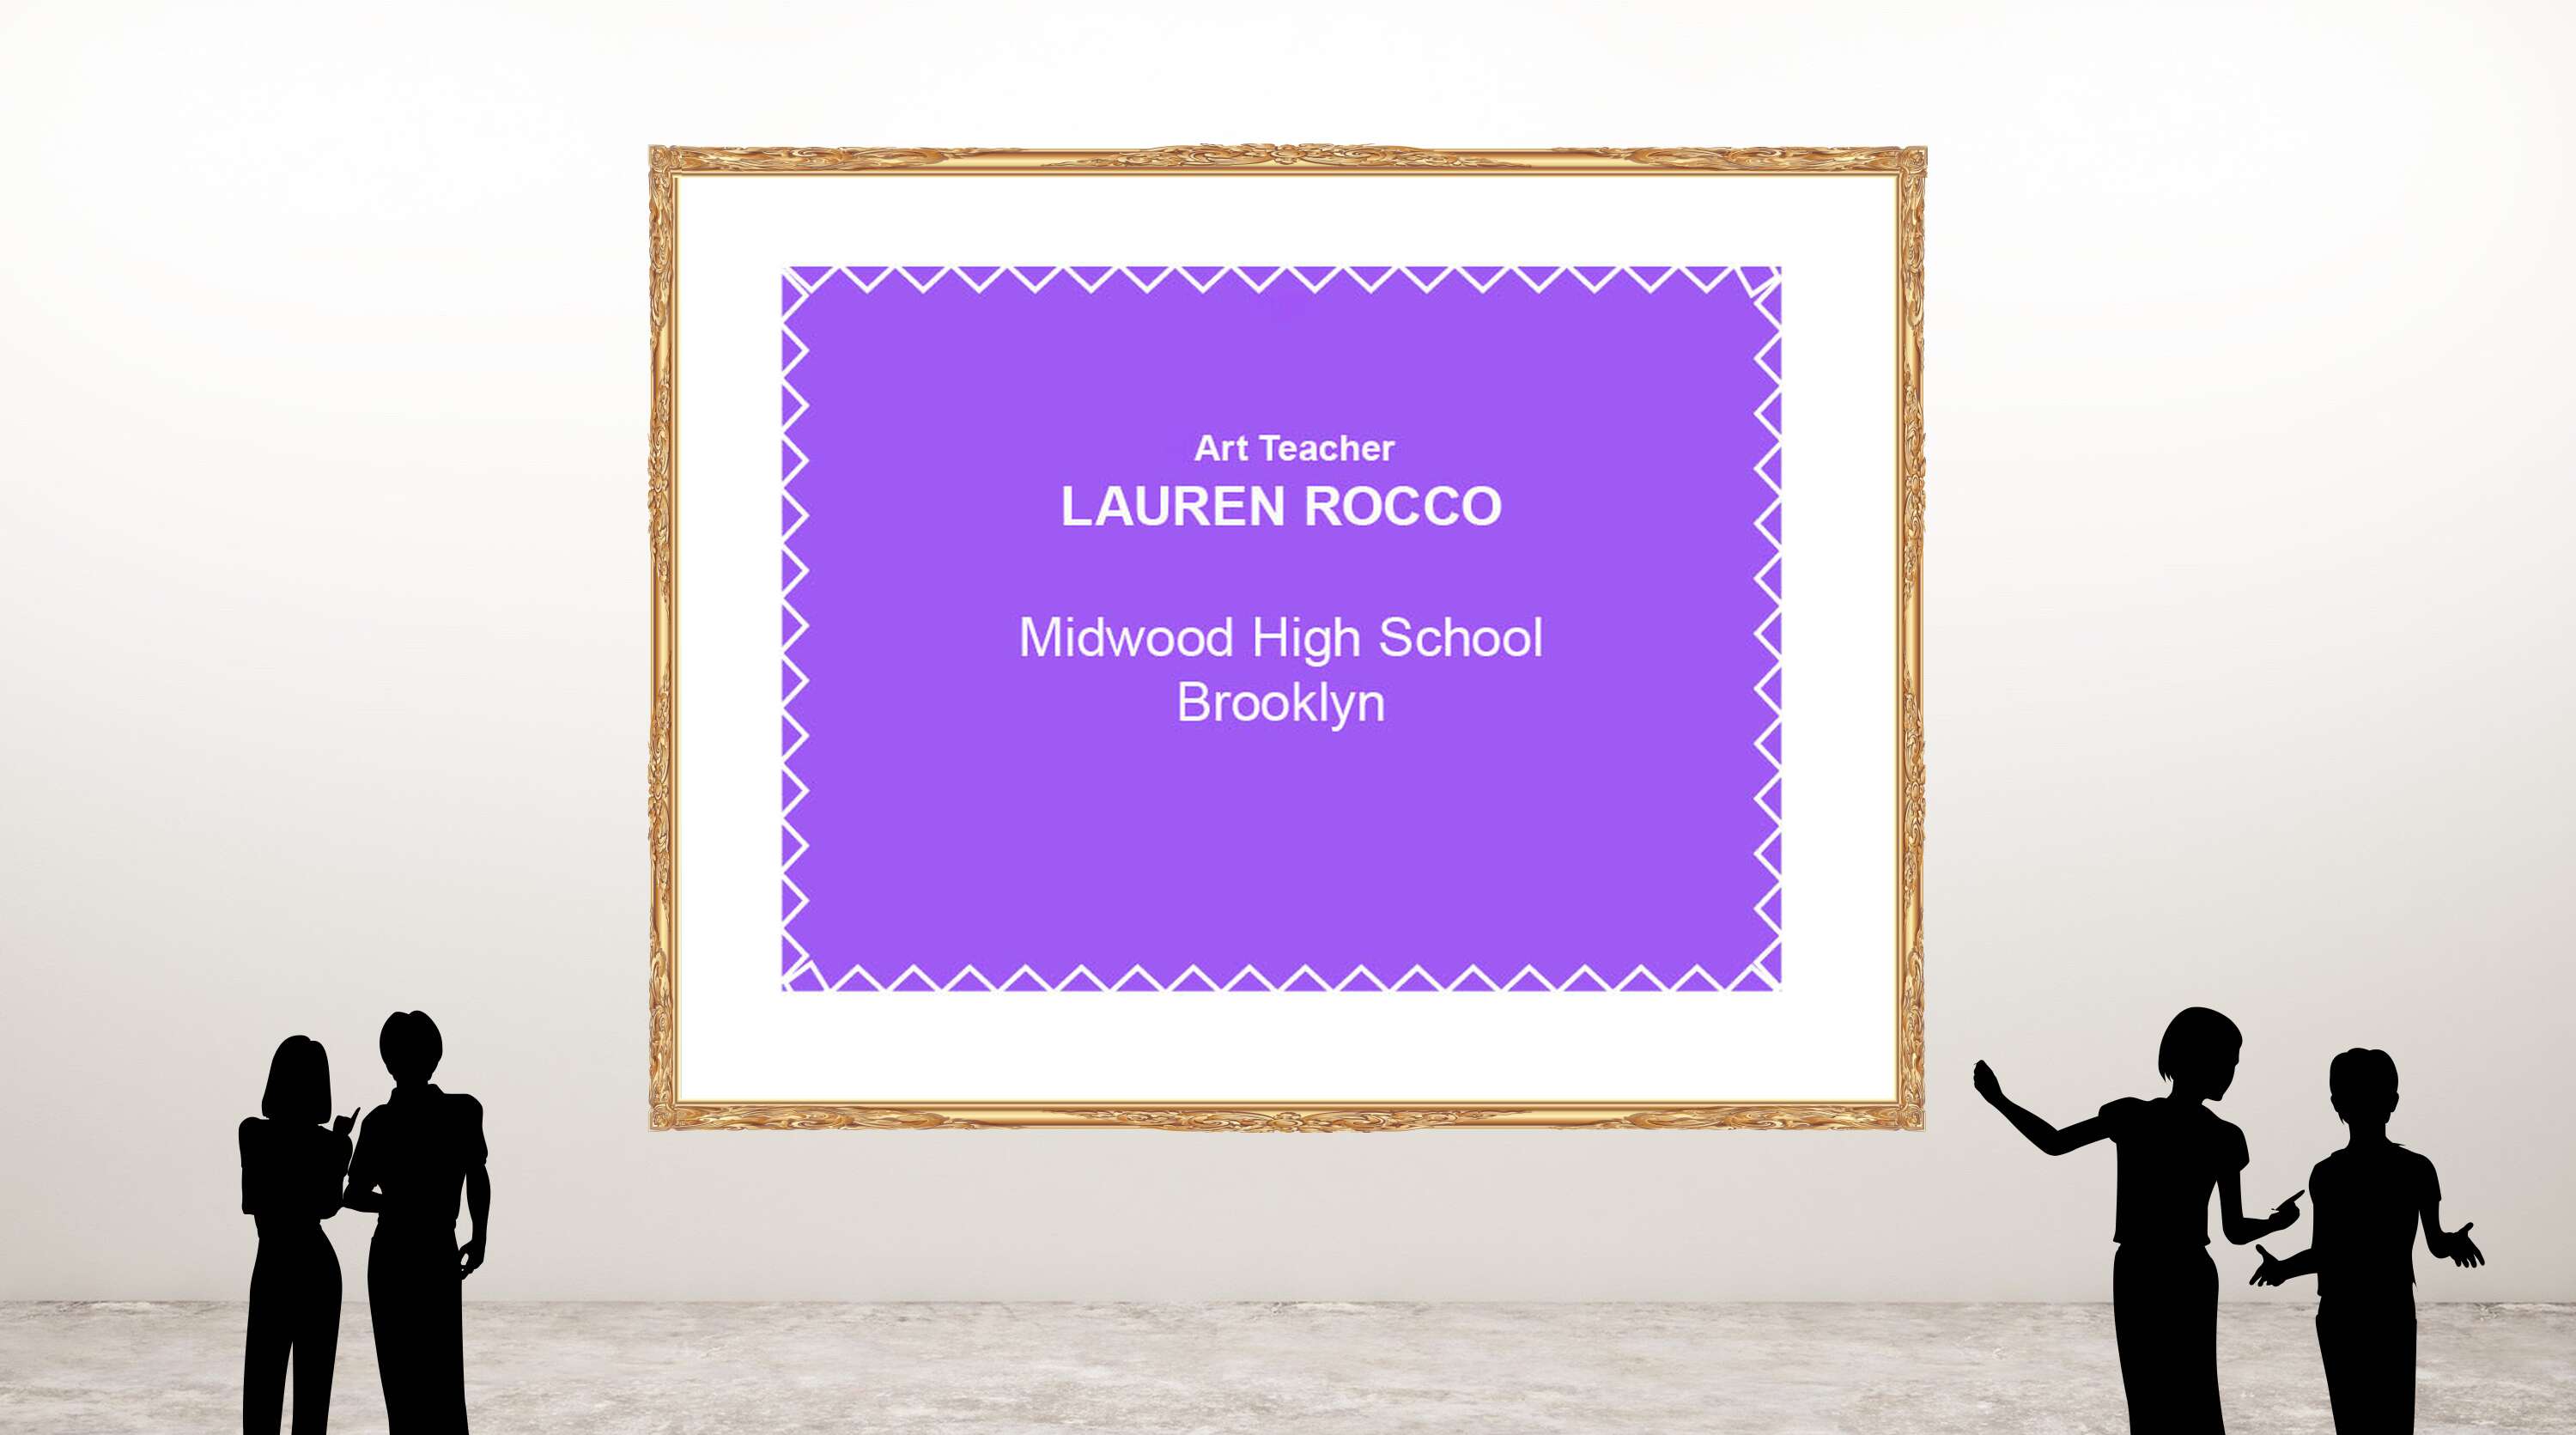 Lauren Rocco, Midwood High School Brooklyn